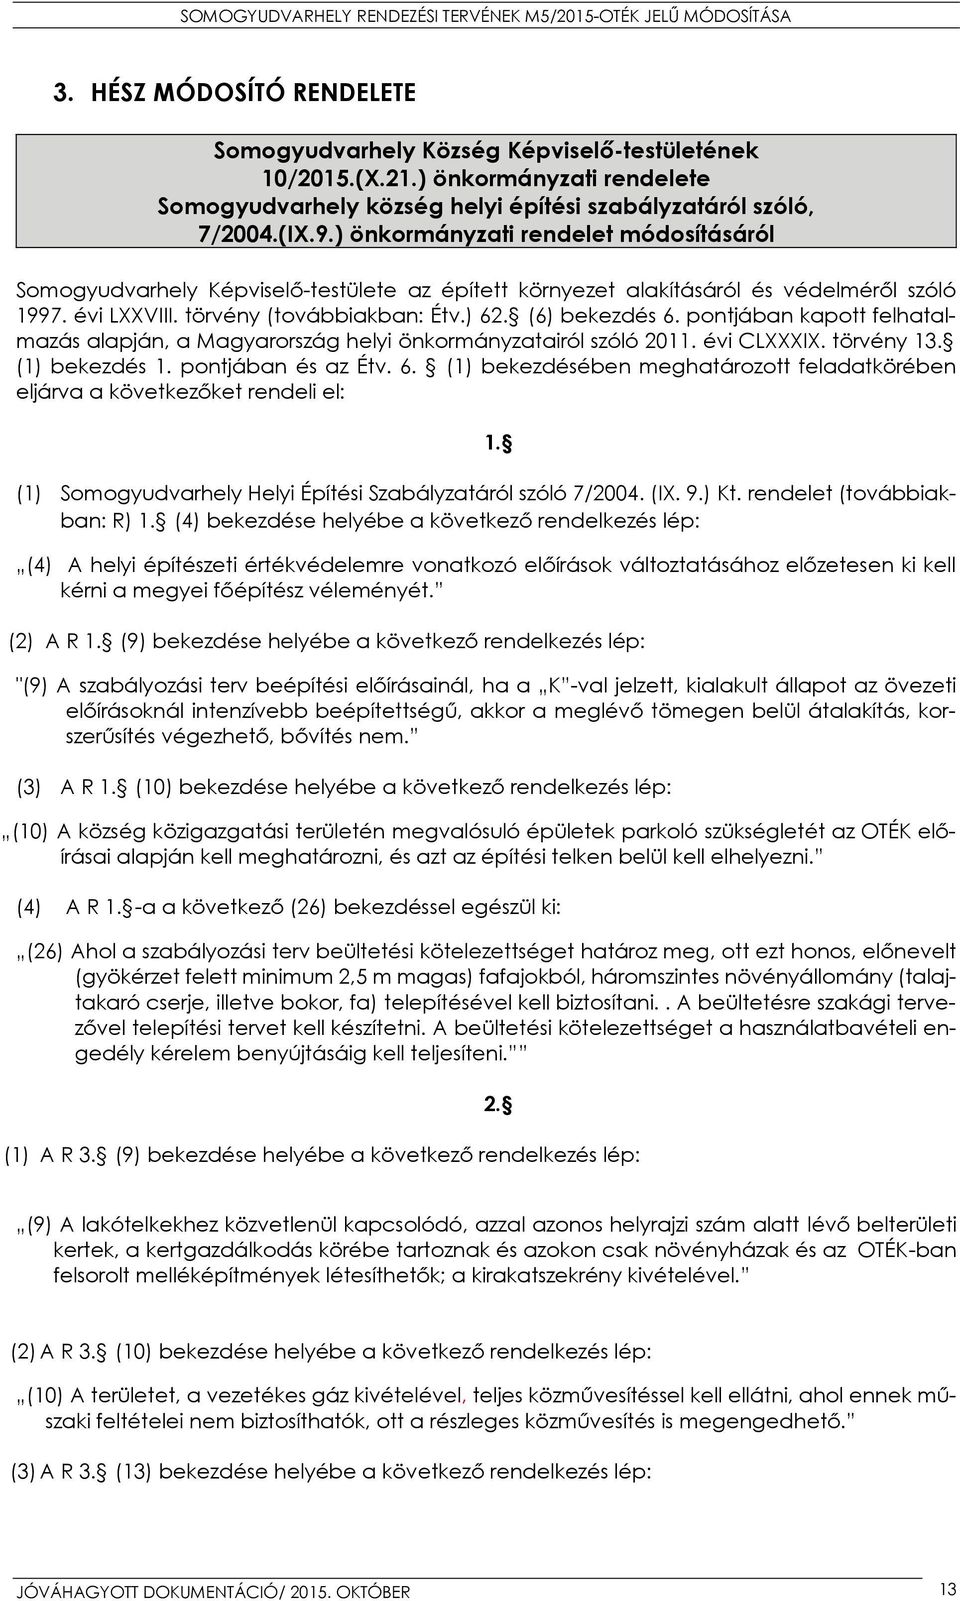 pontjában kapott felhatalmazás alapján, a Magyarország helyi önkormányzatairól szóló 2011. évi CLXXXIX. törvény 13. (1) bekezdés 1. pontjában és az Étv. 6.